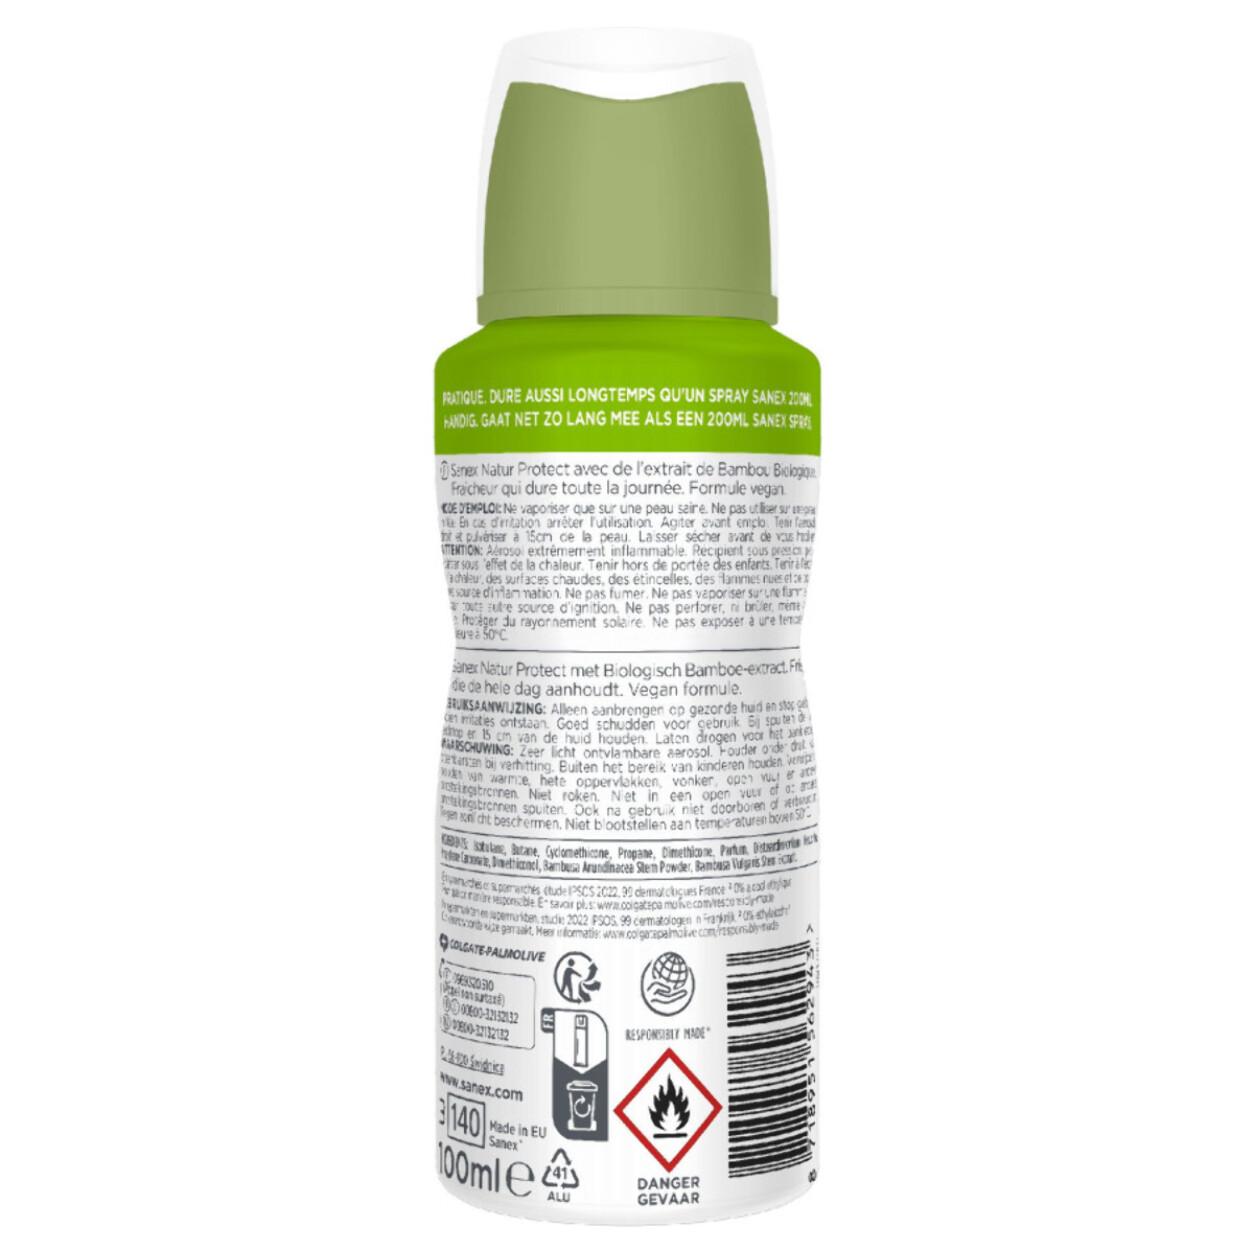 Pack de 6 - Déodorant Sanex Natur Protect bio fresh efficacy compressé - 100ml